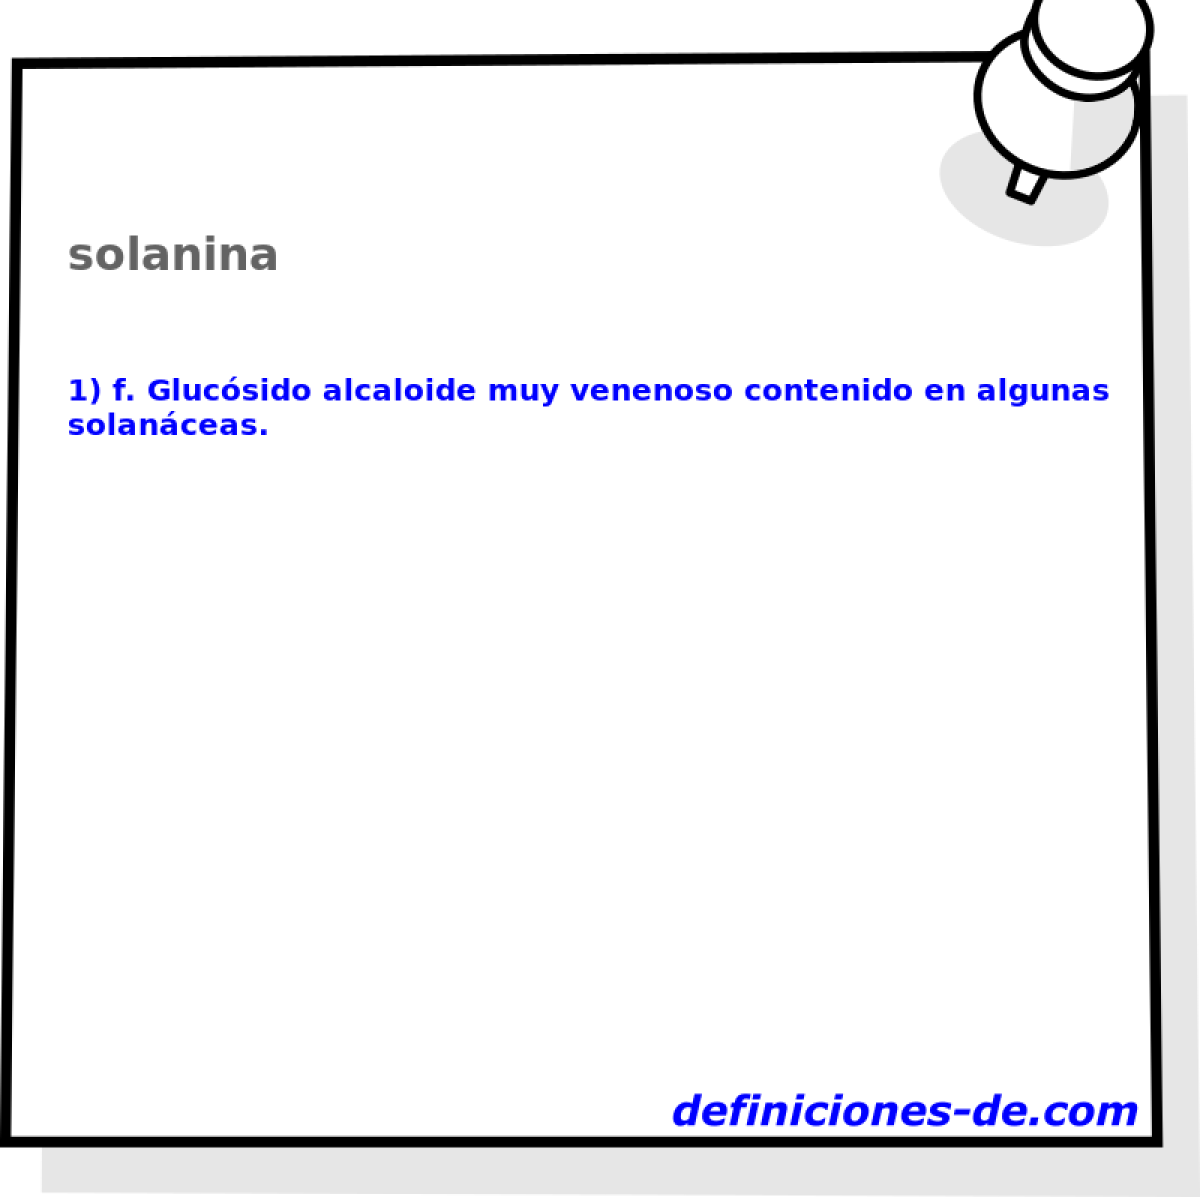 solanina 